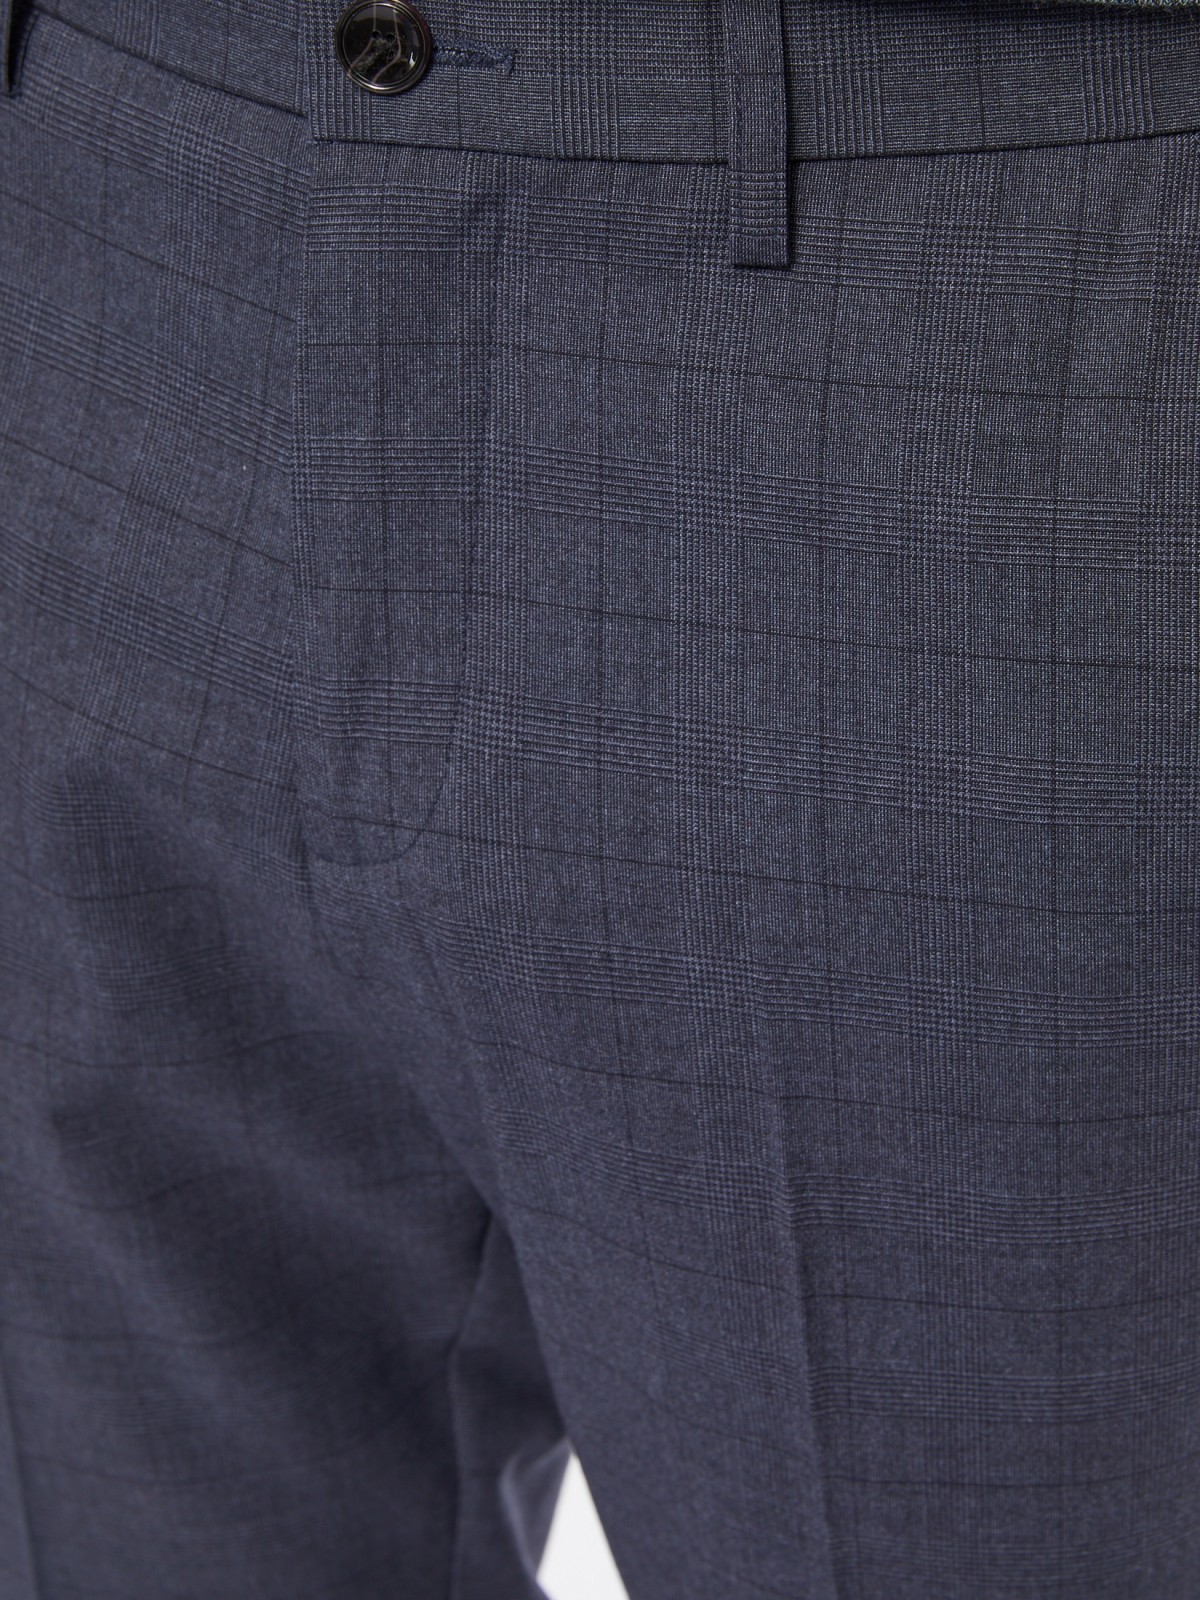 Офисные брюки в клетку со стрелками zolla 01413730L041, цвет синий, размер 30 - фото 4